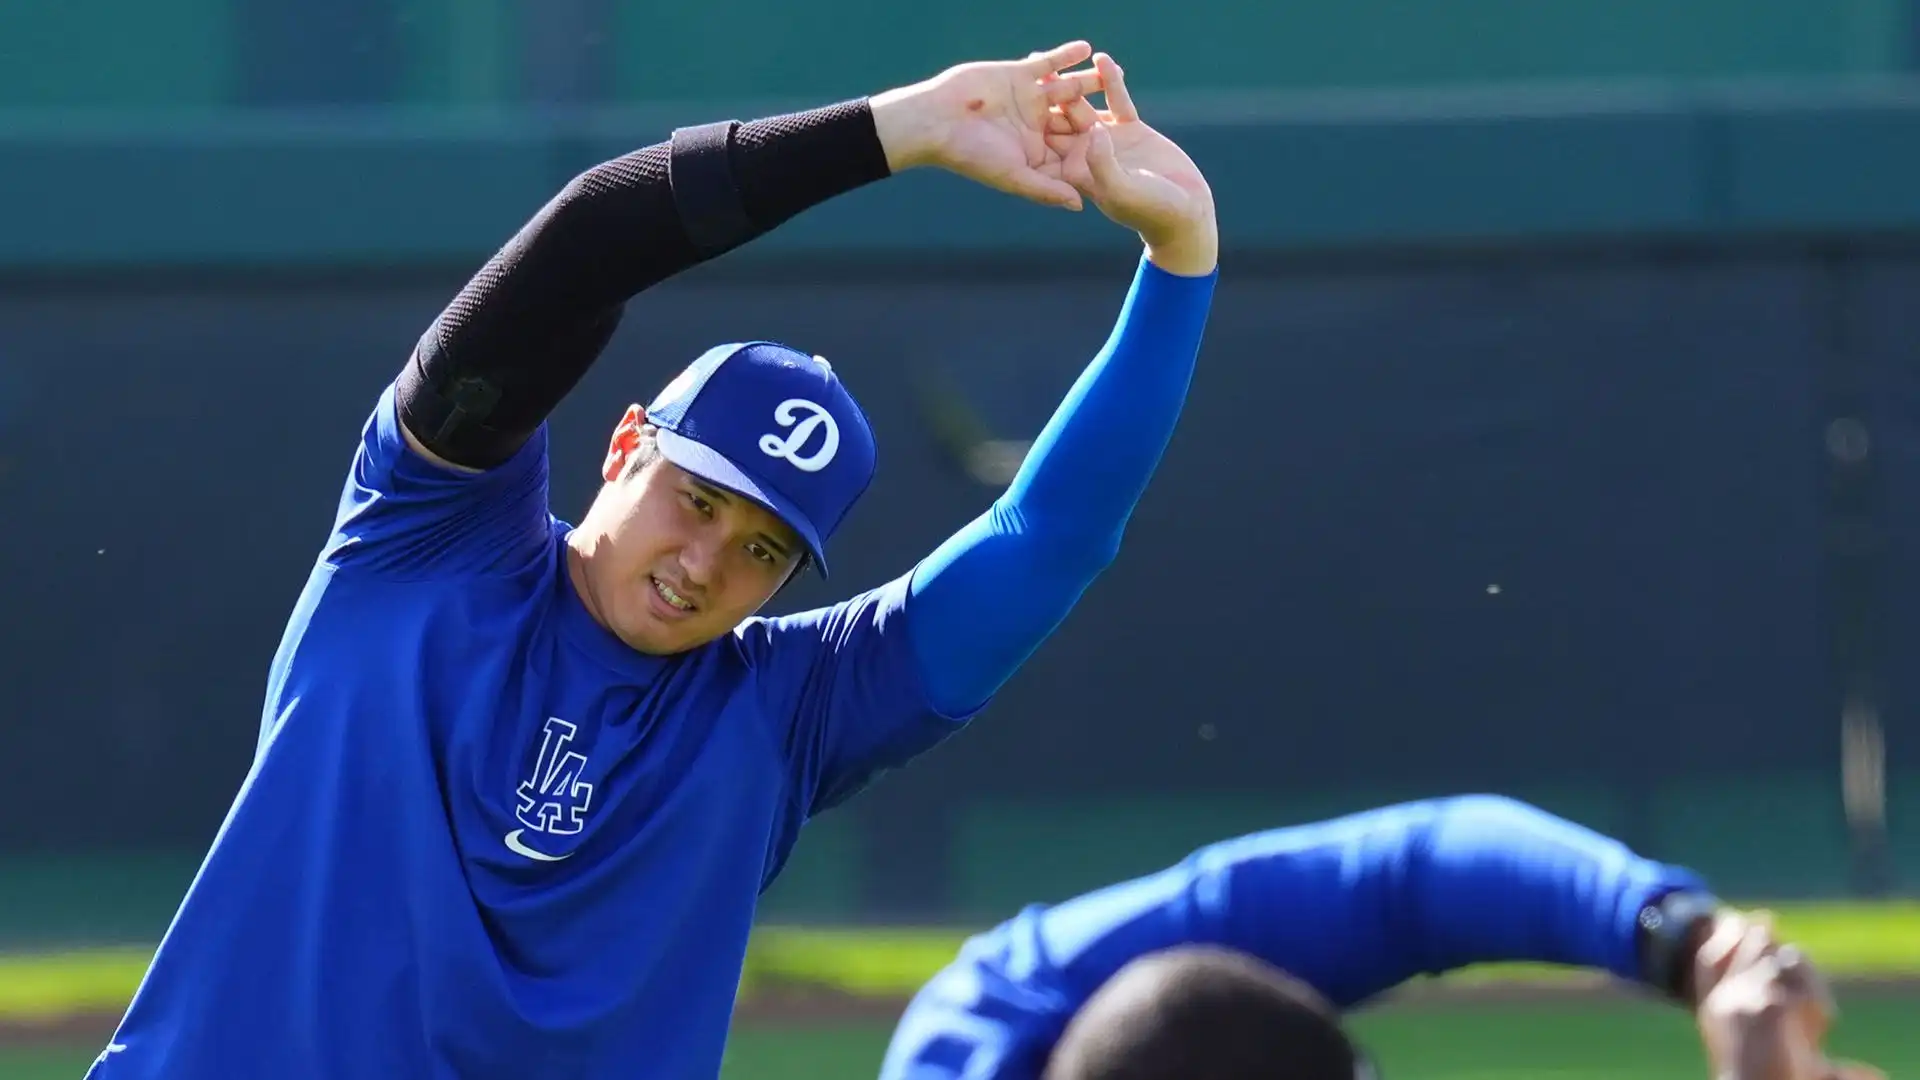 Martedì il campione giapponese farà il suo debutto con i Dodgers nel test primaverile contro i White Sox